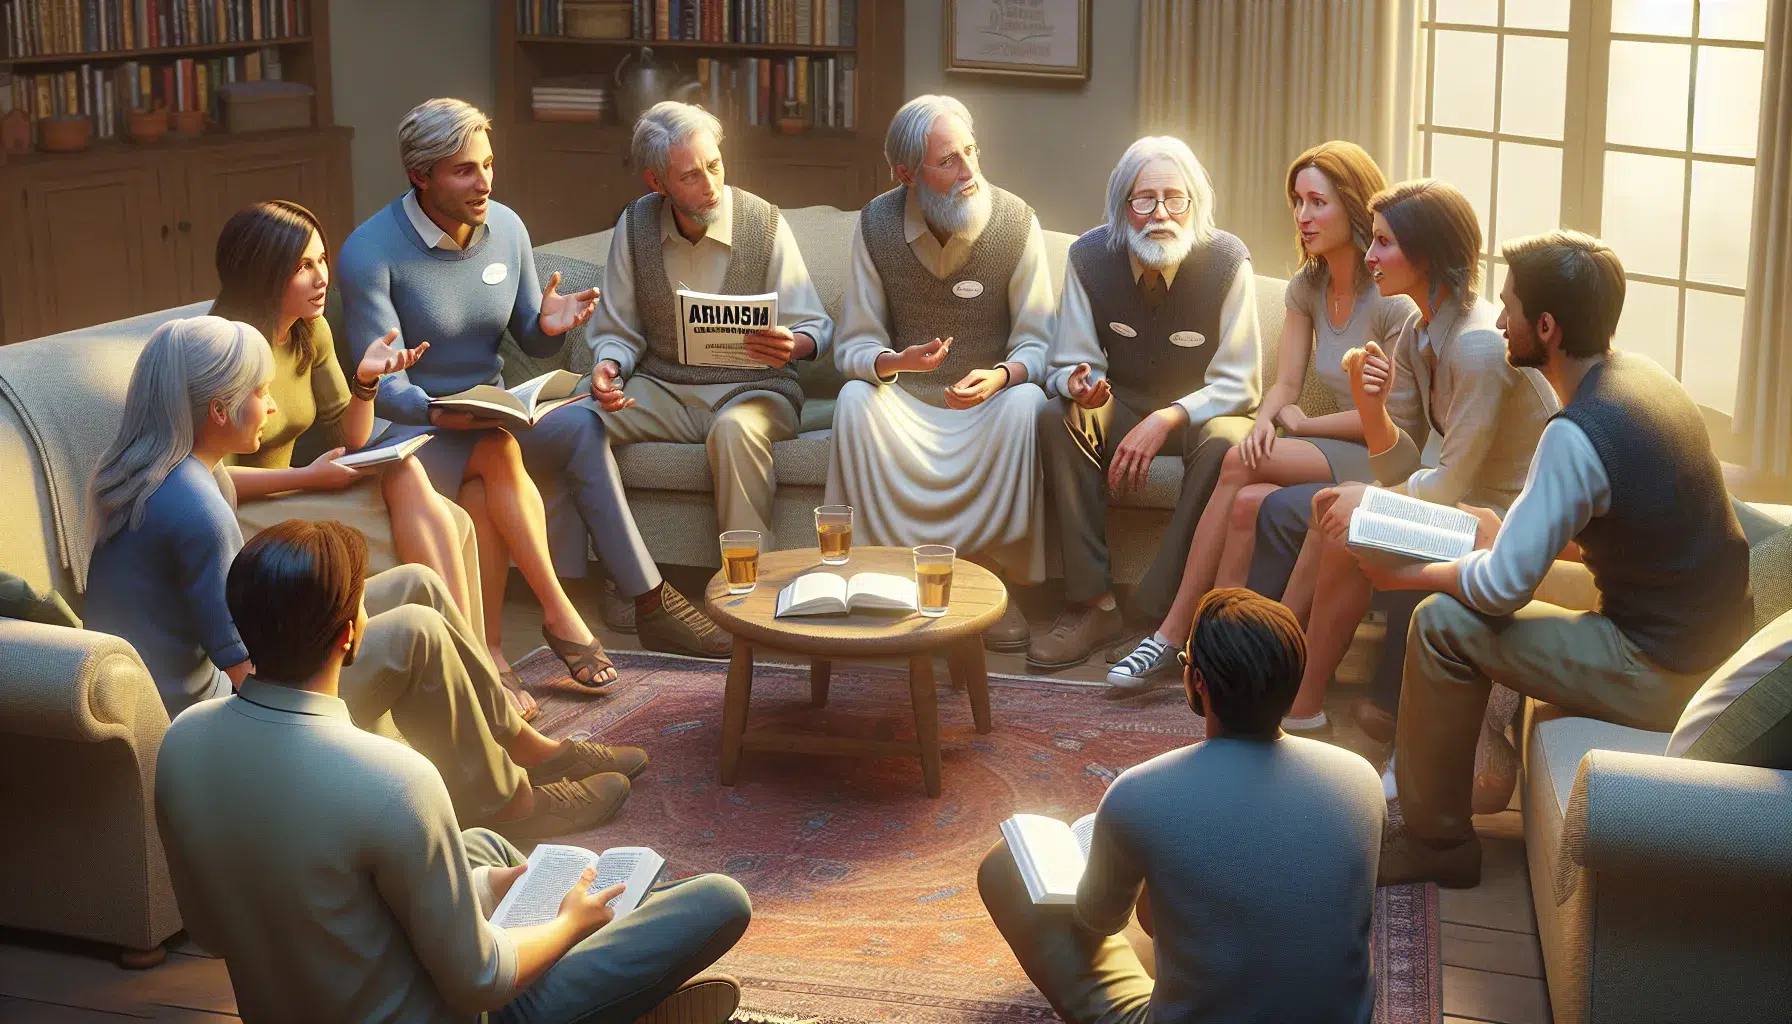 Imagen ilustrativa de un grupo de personas discutiendo sobre el arrianismo y su significado para sus creencias religiosas.